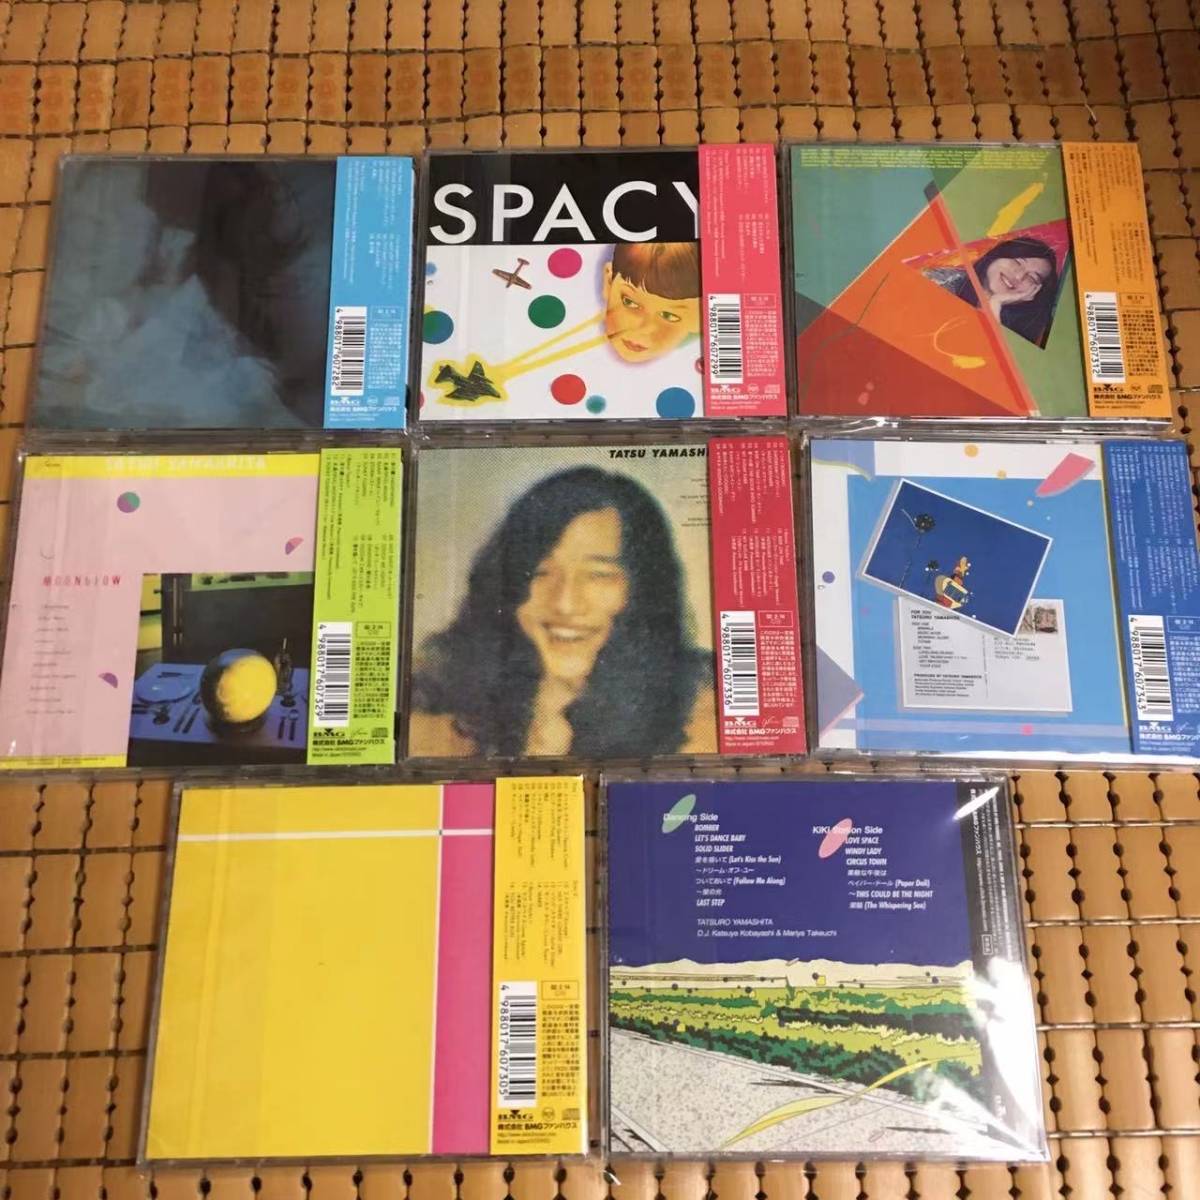 山下達郎『THE RCA/AIR YEARS CD BOX 1976-1982』 8タイトル9枚組CD 